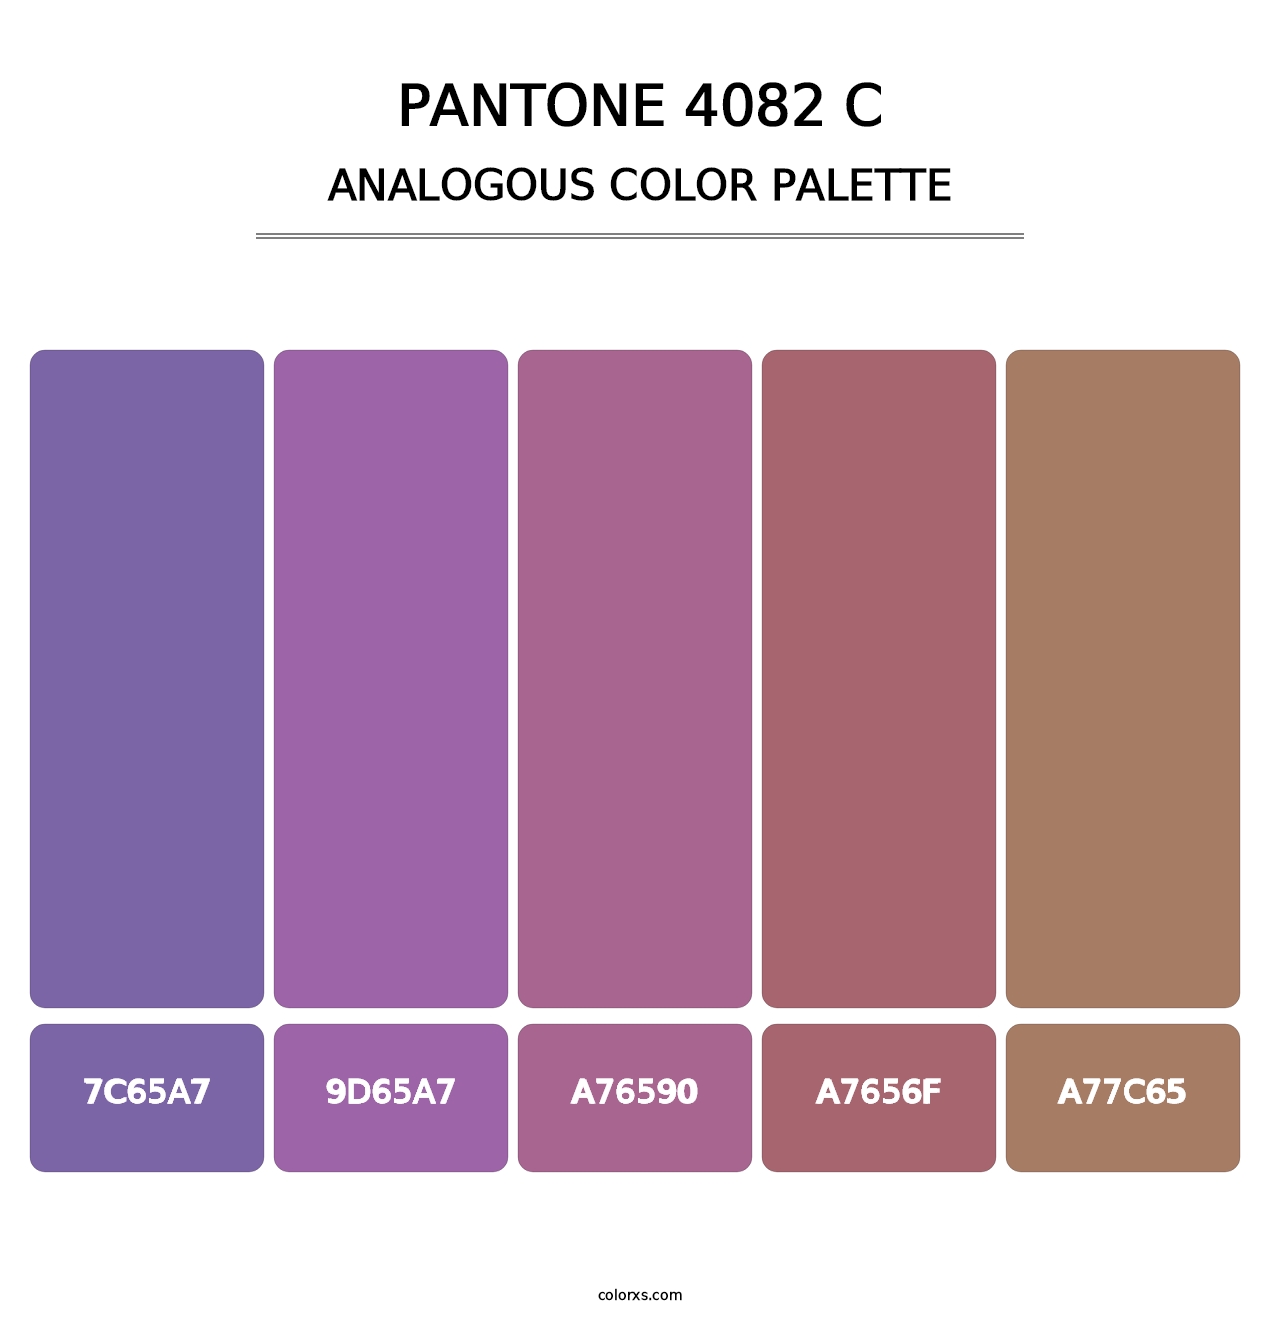 PANTONE 4082 C - Analogous Color Palette